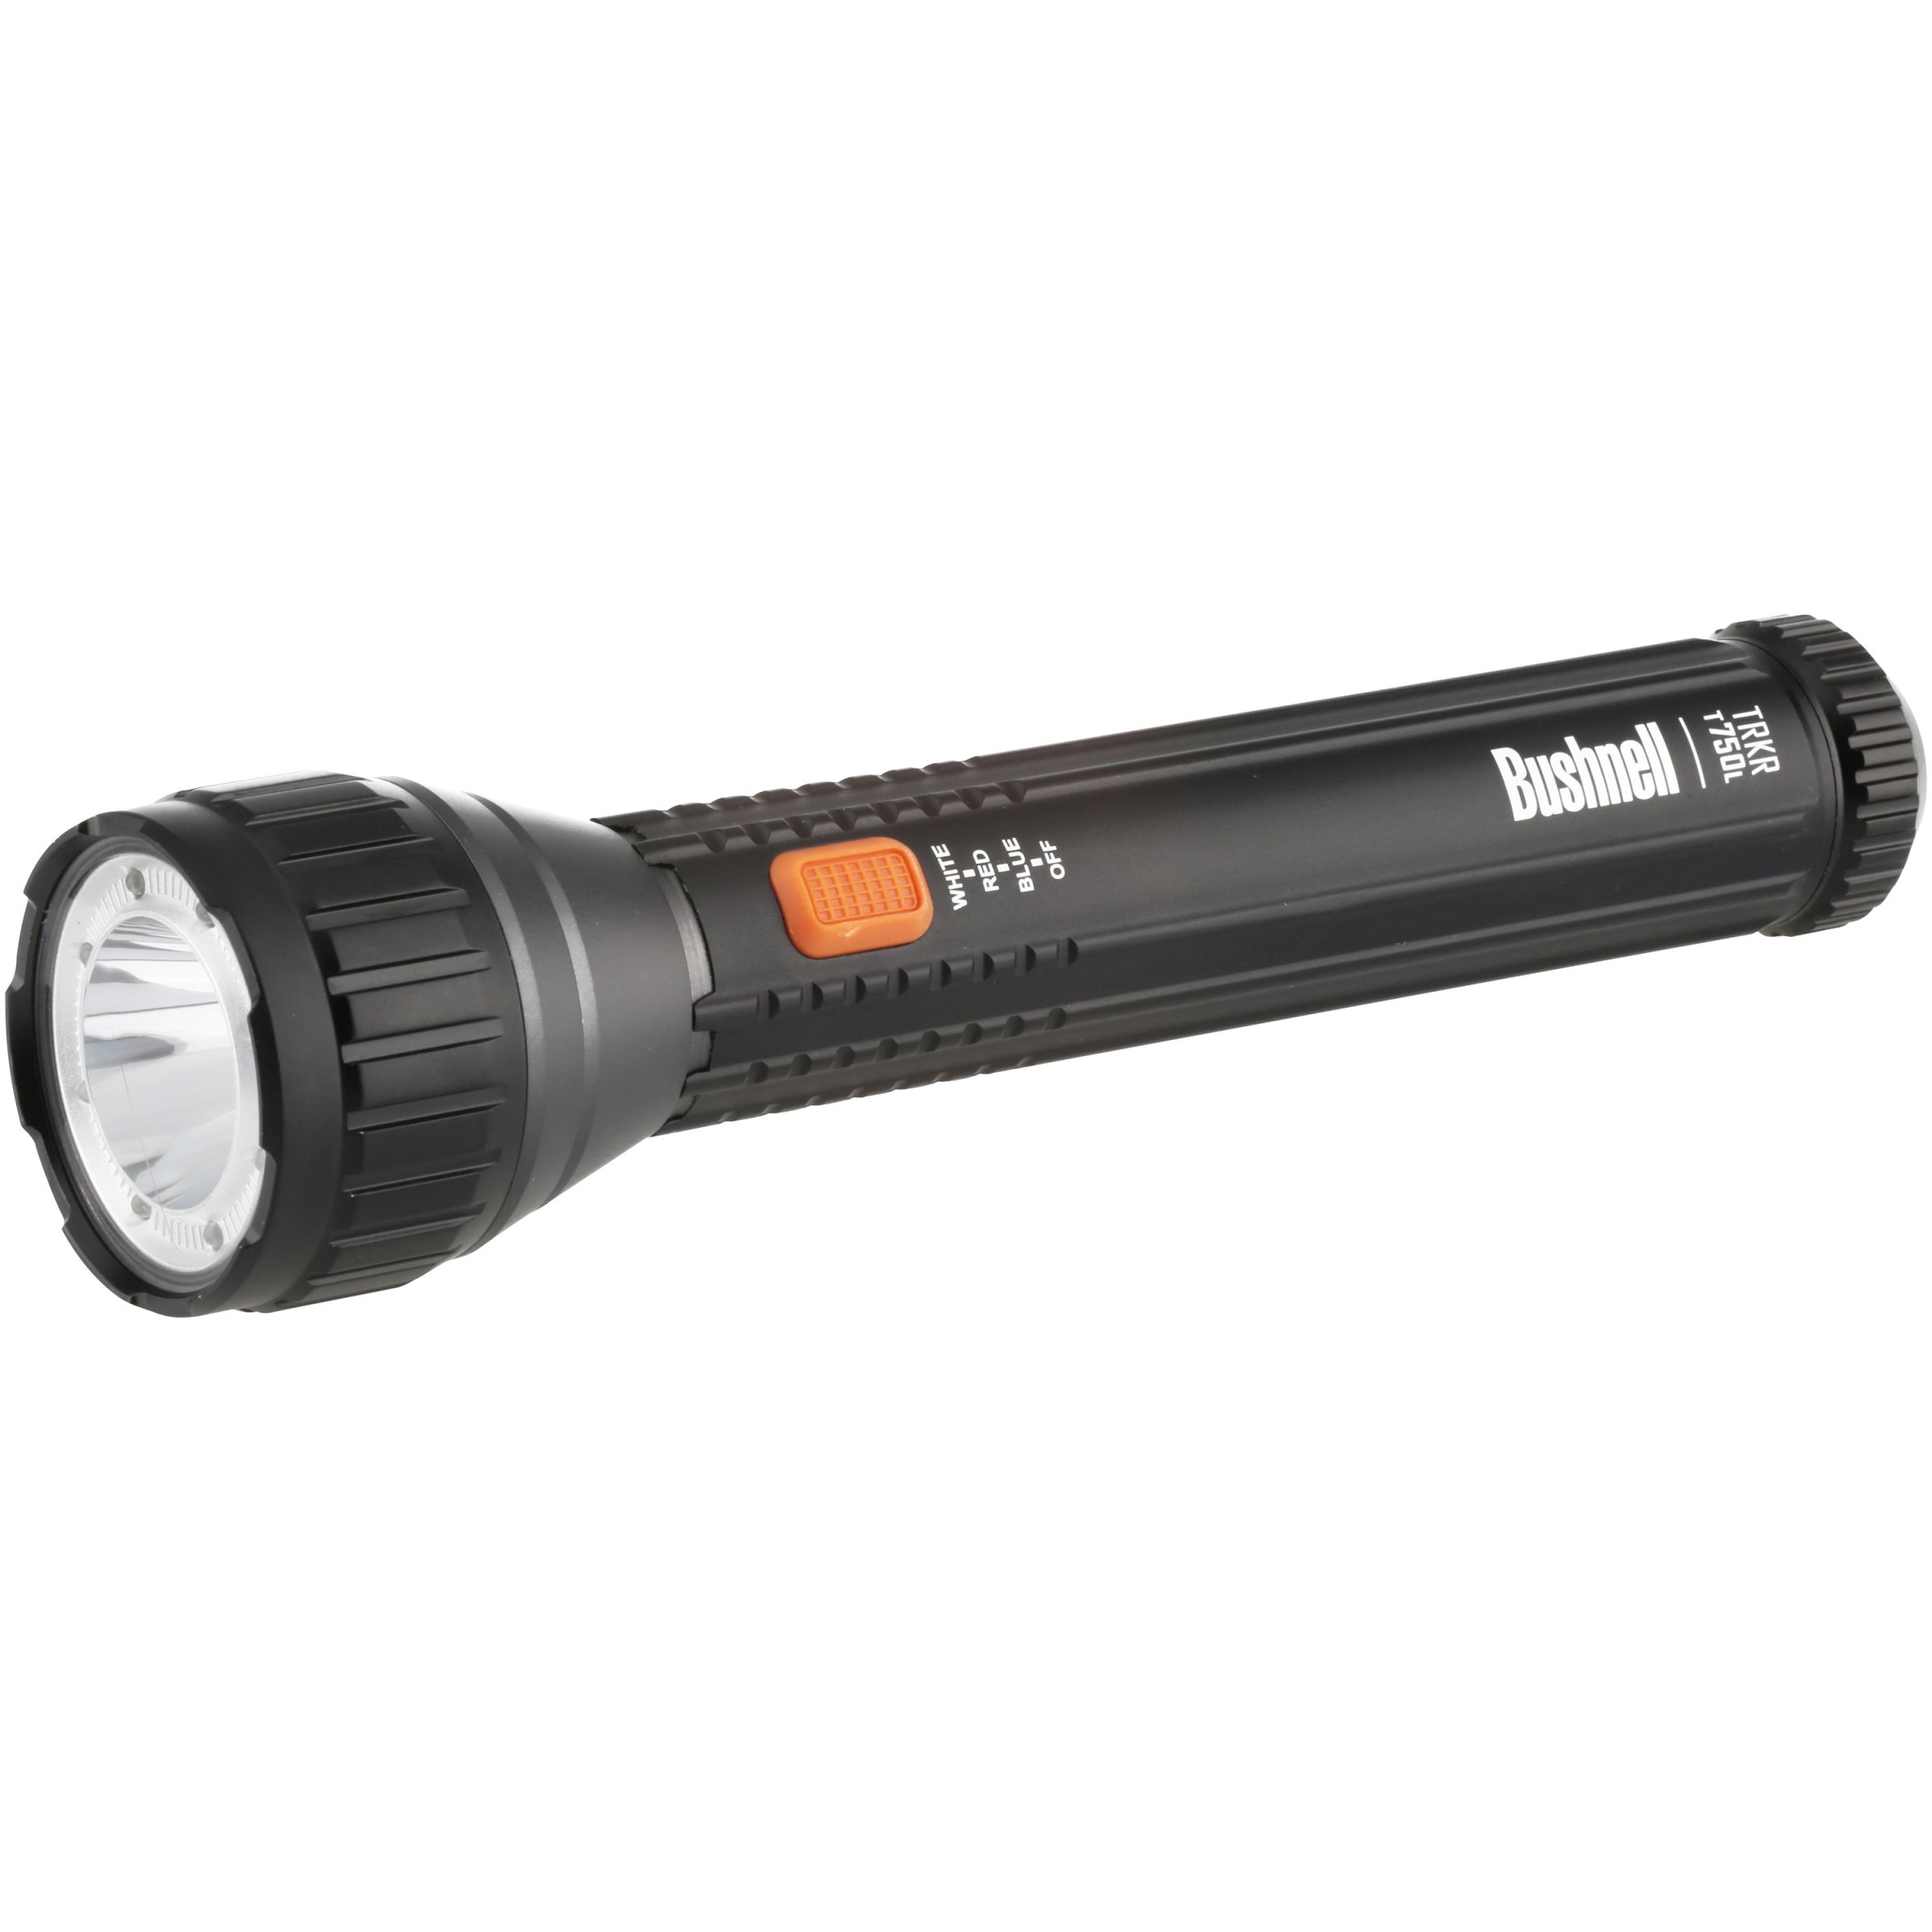 Bushnell 750 Lumen Multi-Color Flashlight -$13.02(60% Off)